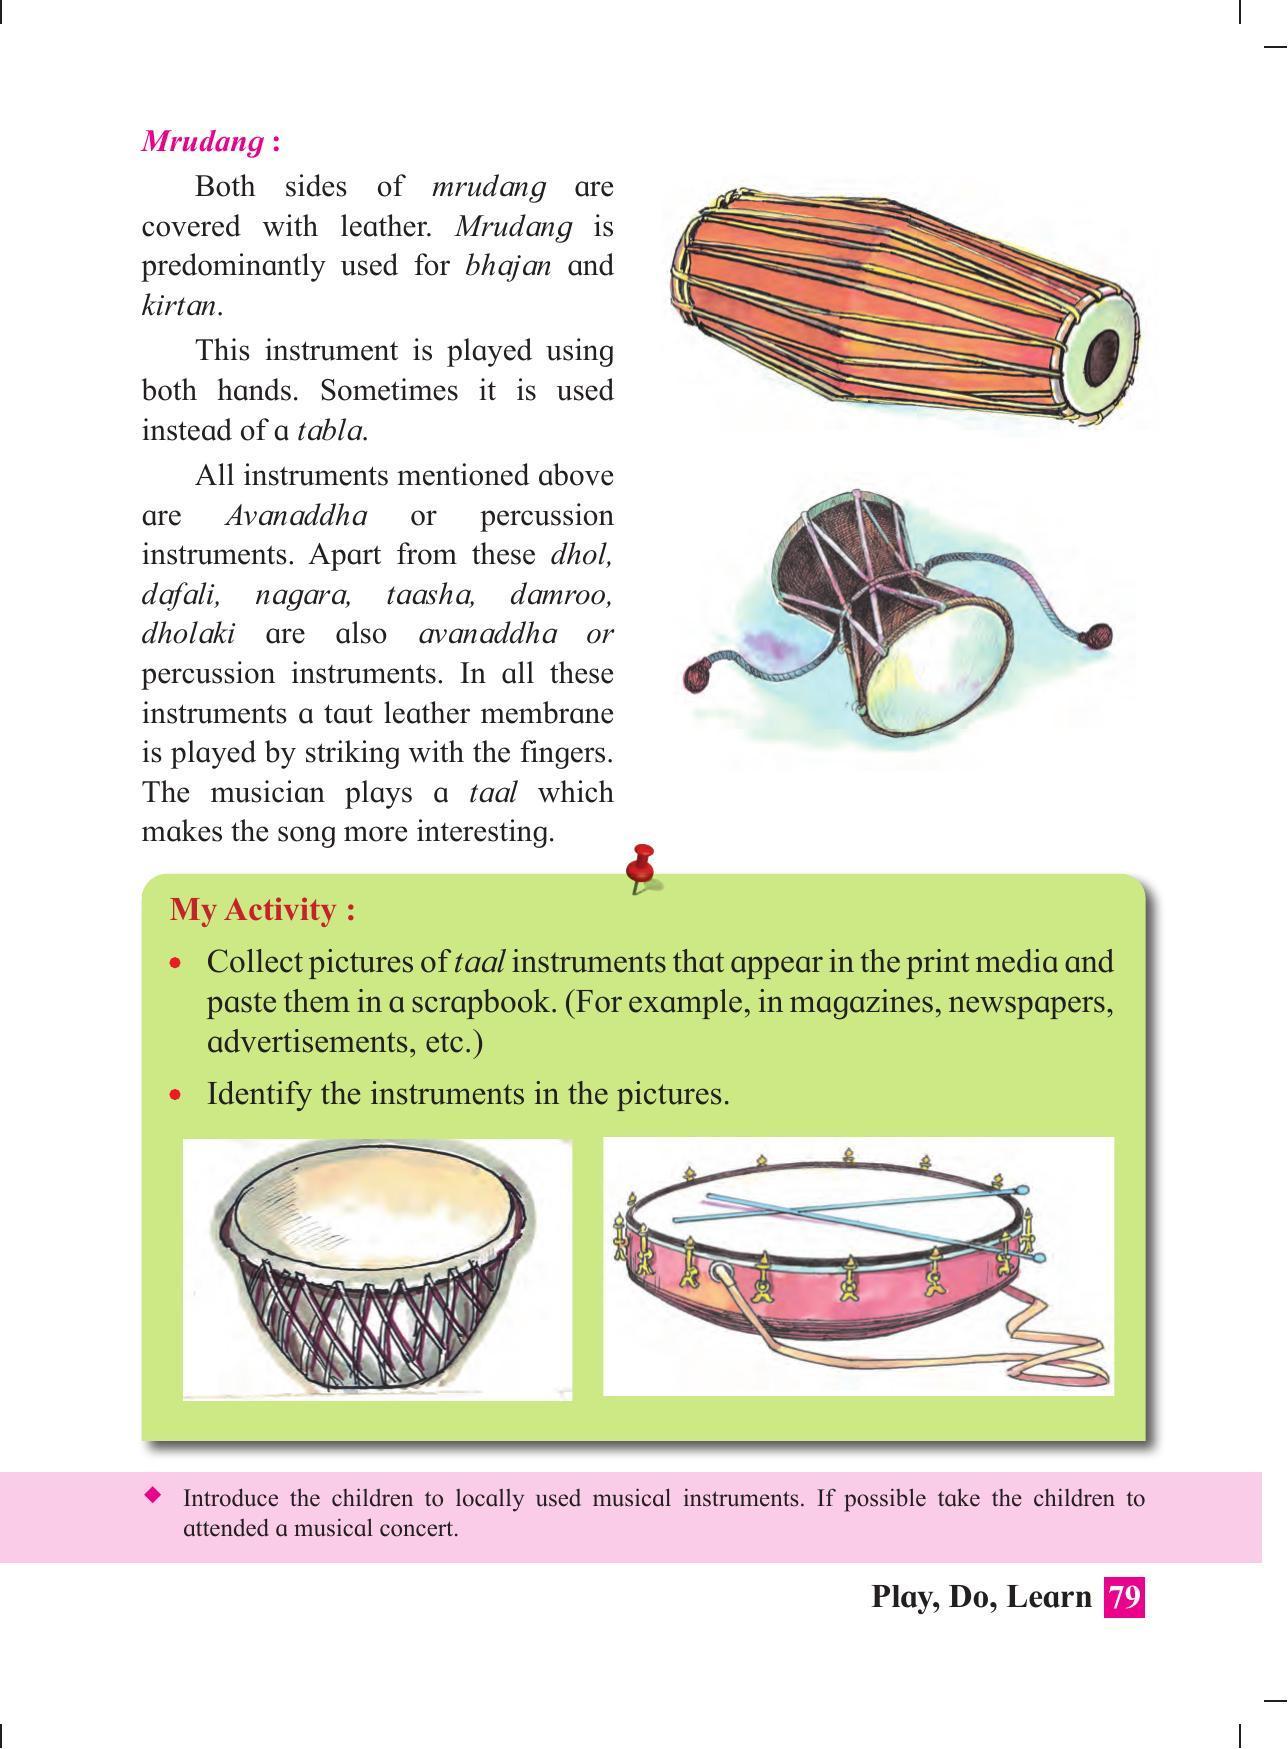 Maharashtra Board Class 4 Play Do Learn (English Medium) Textbook - Page 88